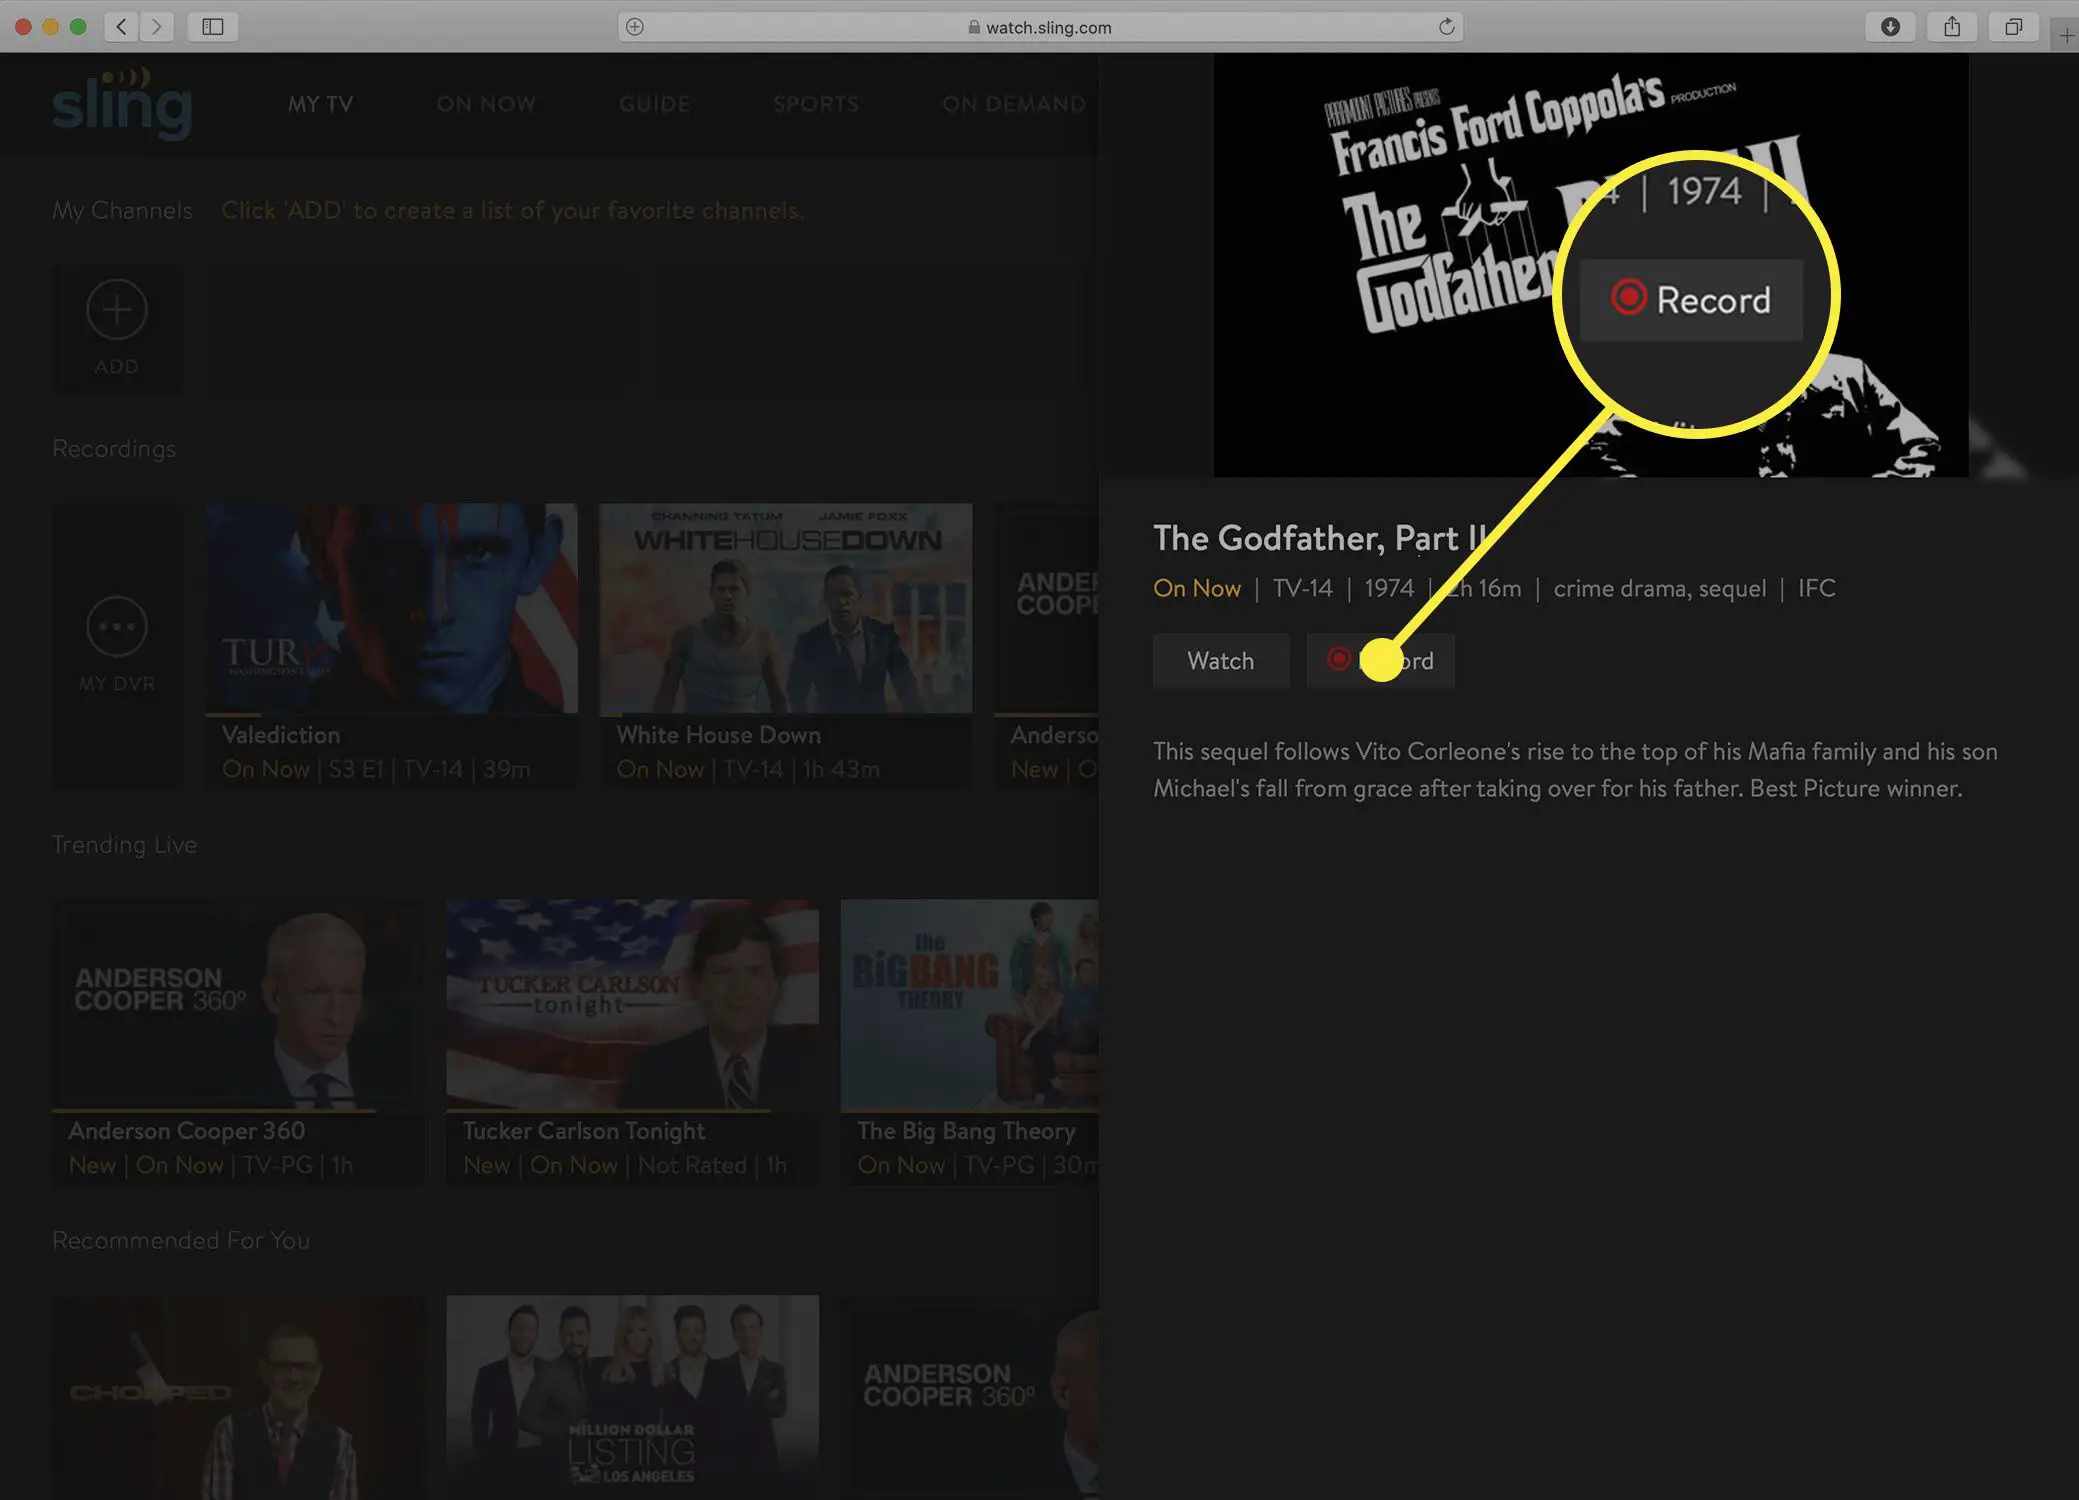 Captura de tela da tela de informações do programa de TV do Sling após a interrupção de uma gravação de DVR